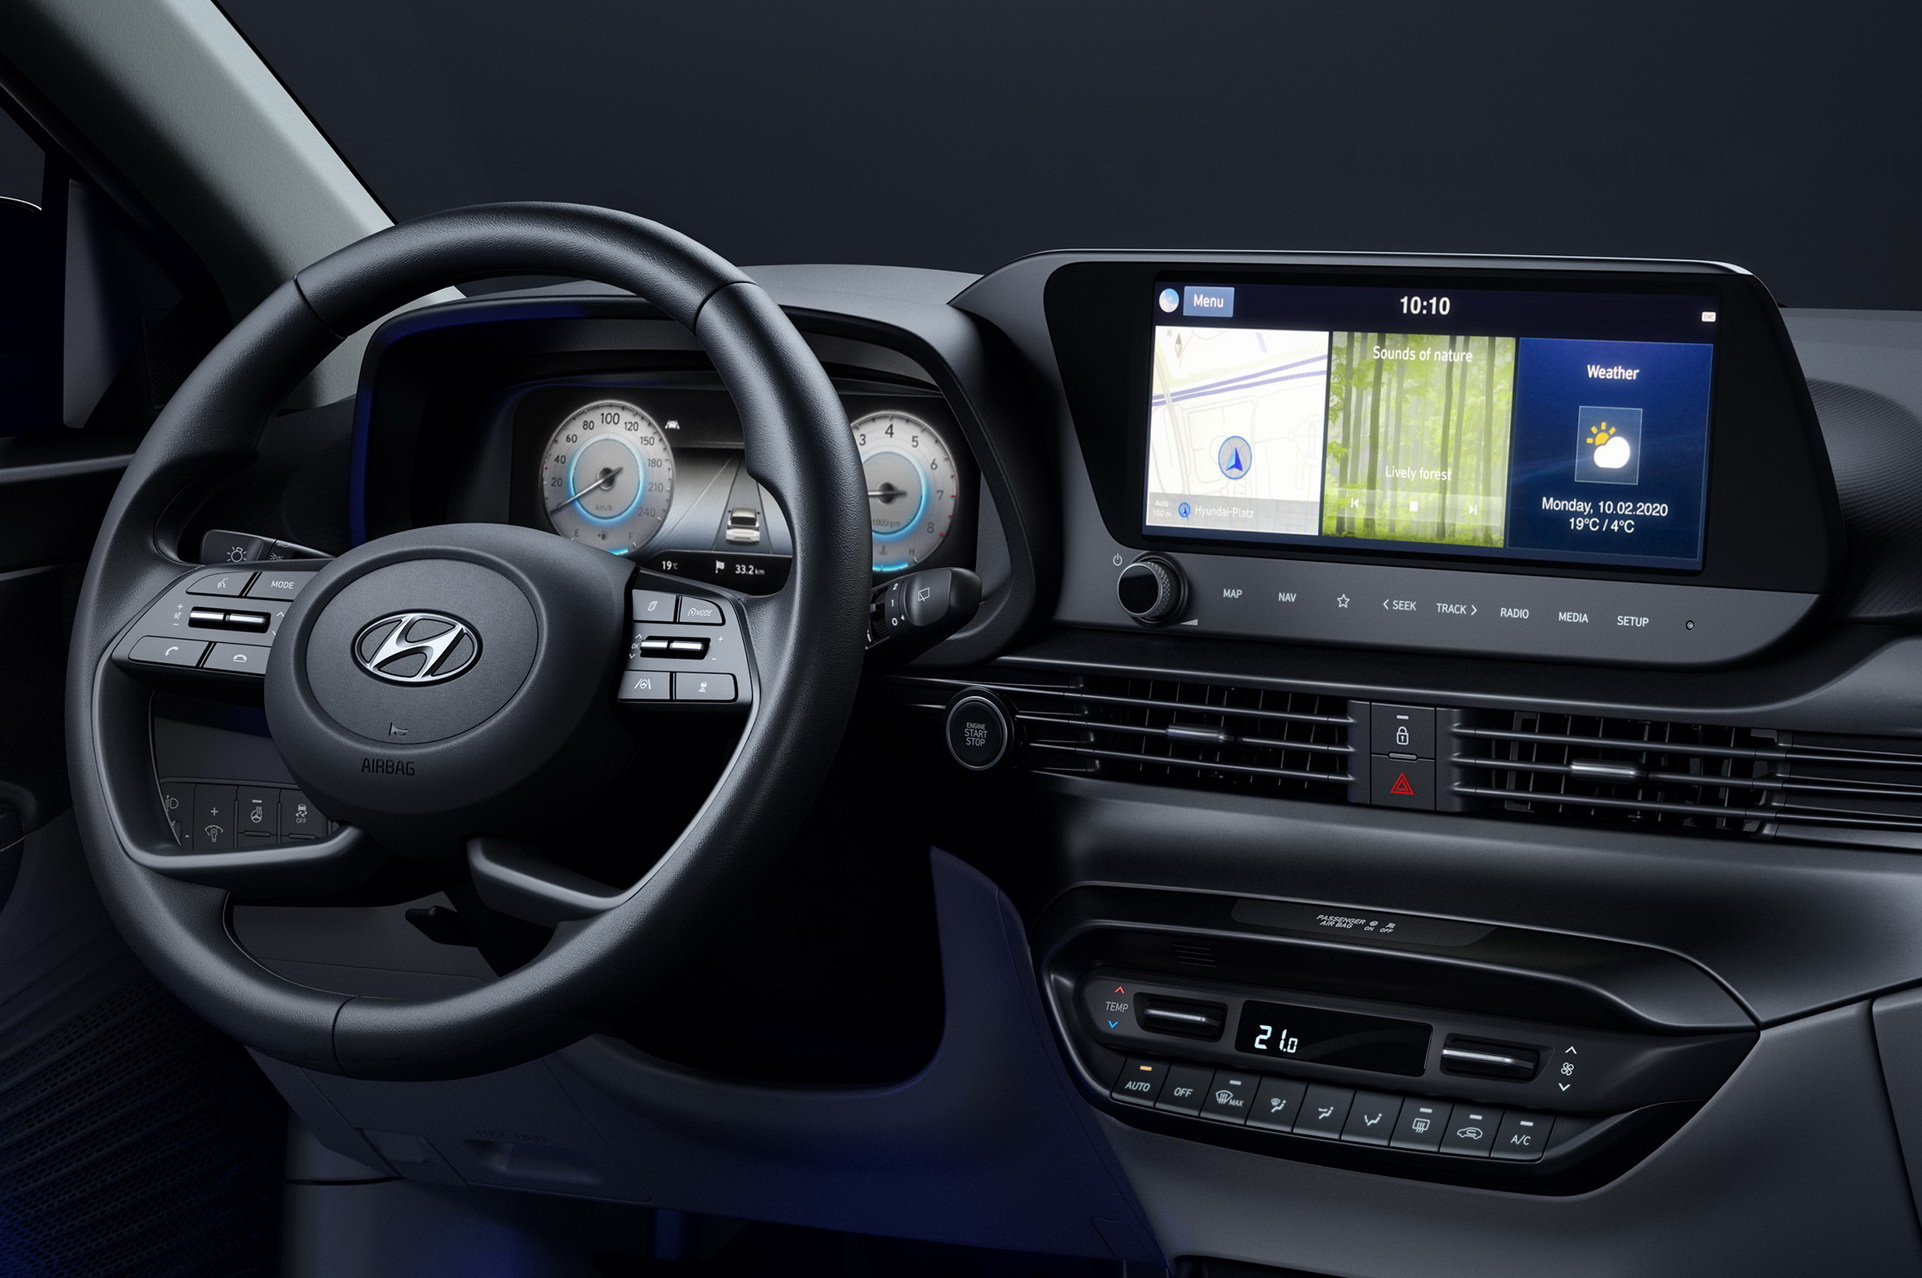 Chi tiết nội thất sang trọng của xe Hyundai i10 4